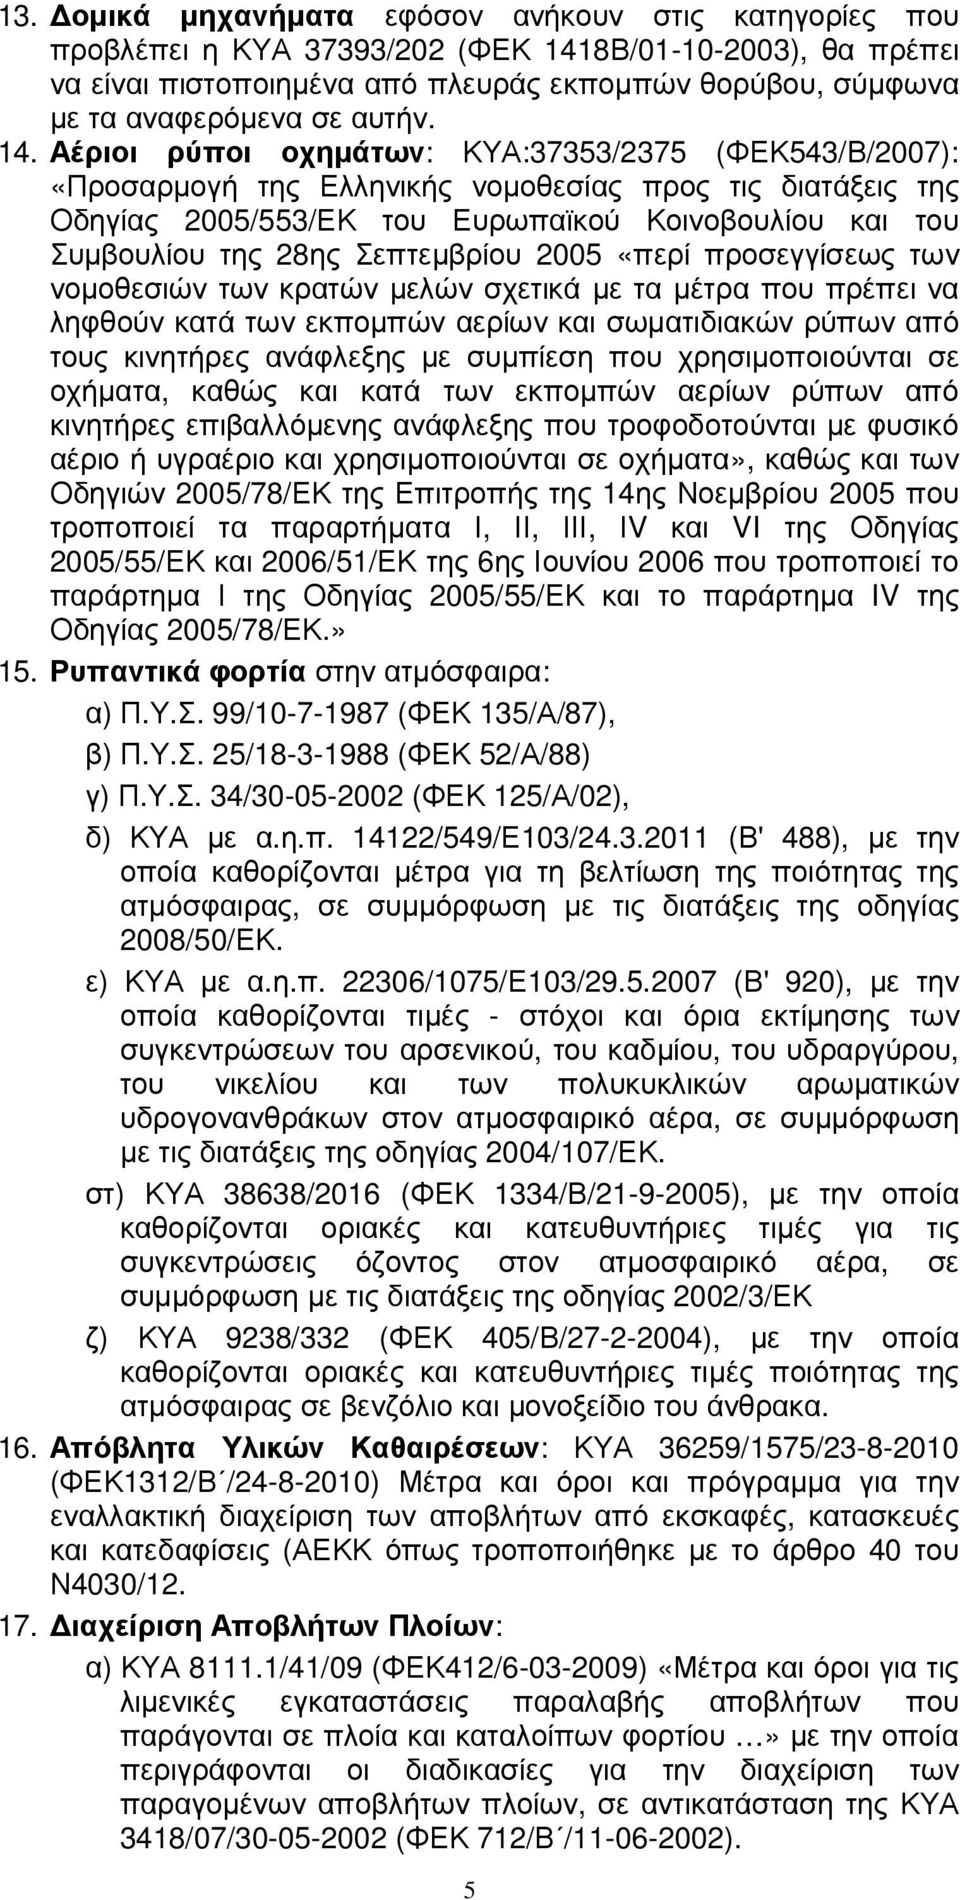 Αέριοι ρύποι οχηµάτων: ΚΥΑ:37353/2375 (ΦΕΚ543/Β/2007): «Προσαρµογή της Ελληνικής νοµοθεσίας προς τις διατάξεις της Οδηγίας 2005/553/ΕΚ του Ευρωπαϊκού Κοινοβουλίου και του Συµβουλίου της 28ης